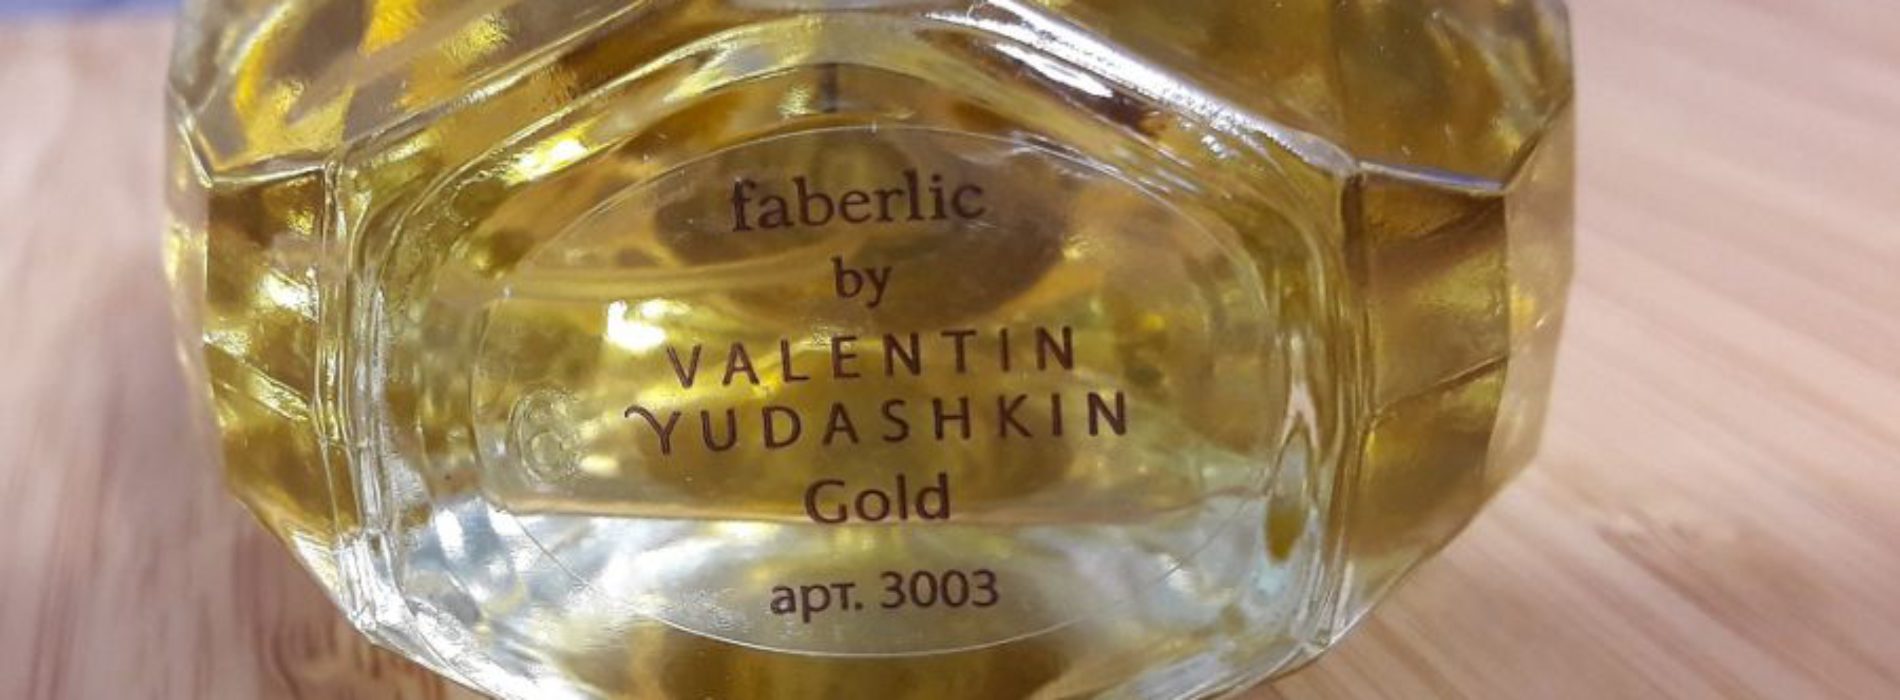 Парфюмерная вода Faberlic by Valentin Yudashkin Gold